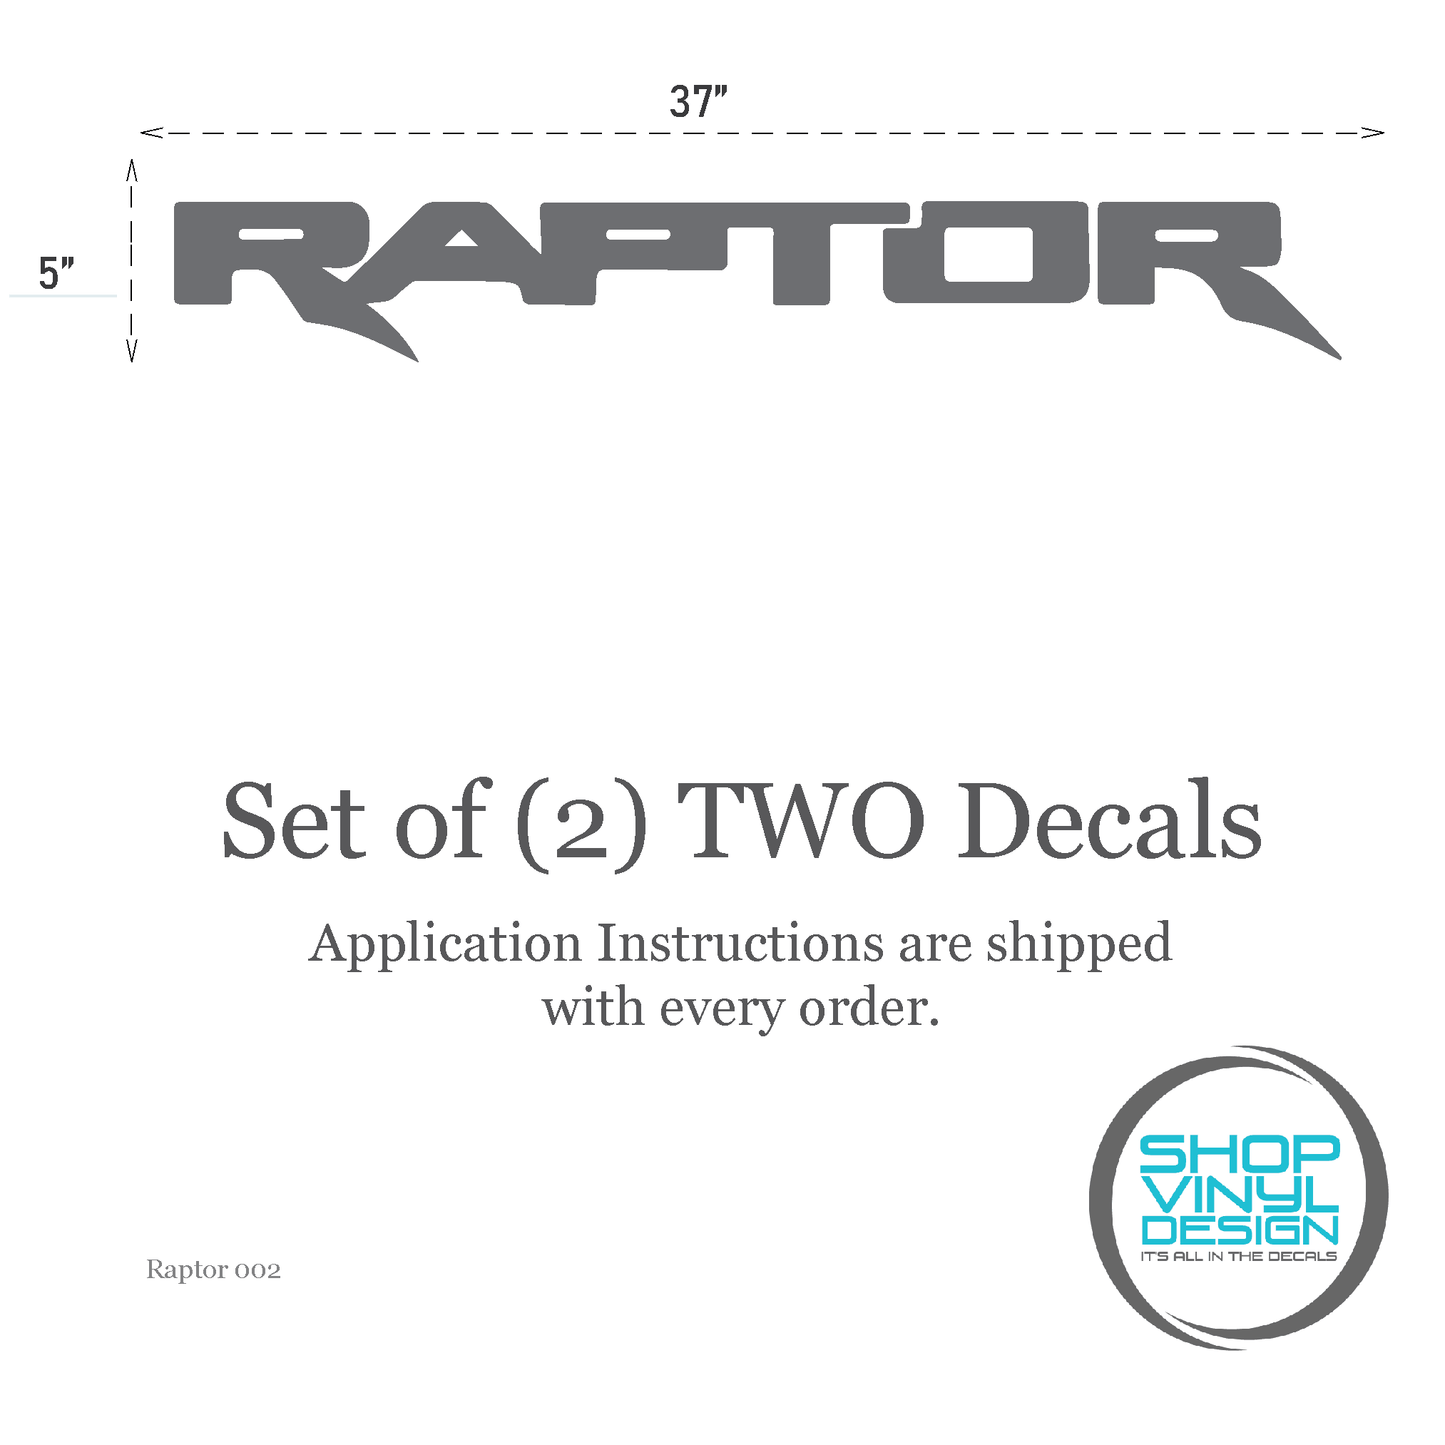 Shop Vinyl Design F-150 Raptor SVT Replacement Bedside Decals #002 Vehicle Vinyl Graphic Decal Shop Vinyl Design decals stickers